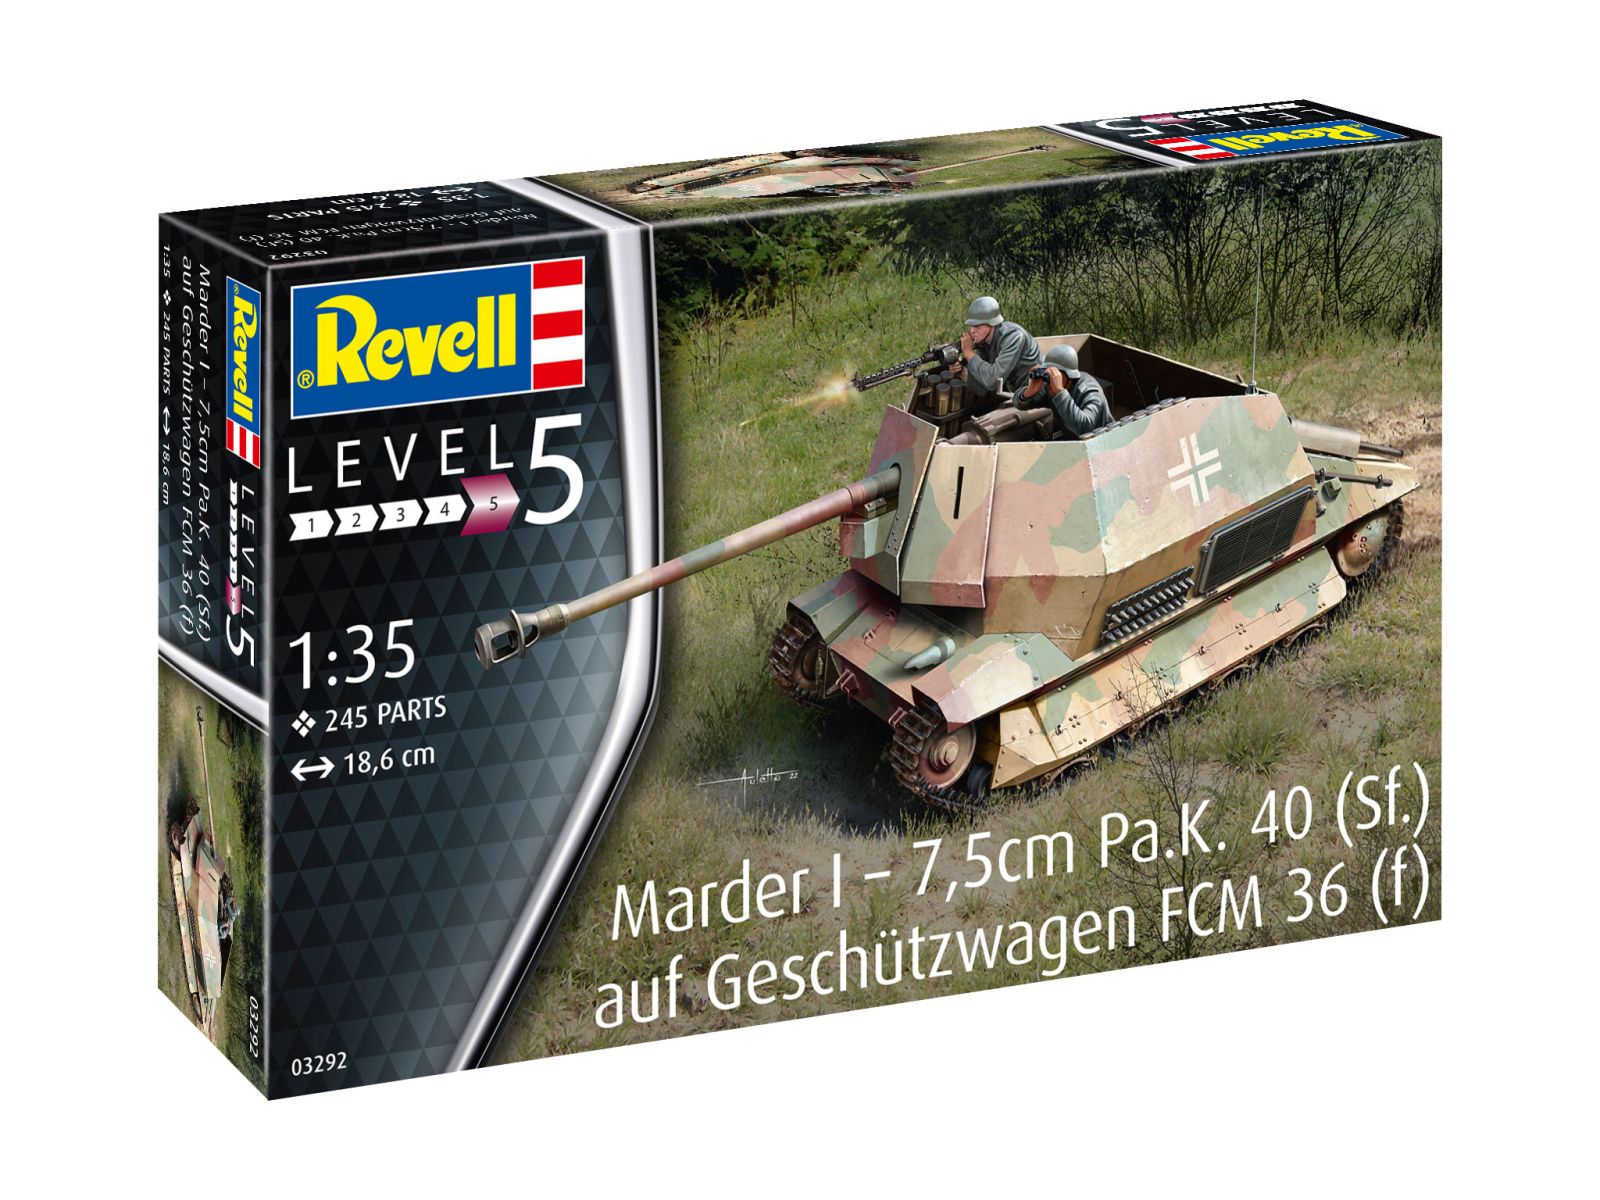 Revell 03292 - Marder I – 7,5cm Pa.K. 40 (Sf.) auf FCM 36(f)